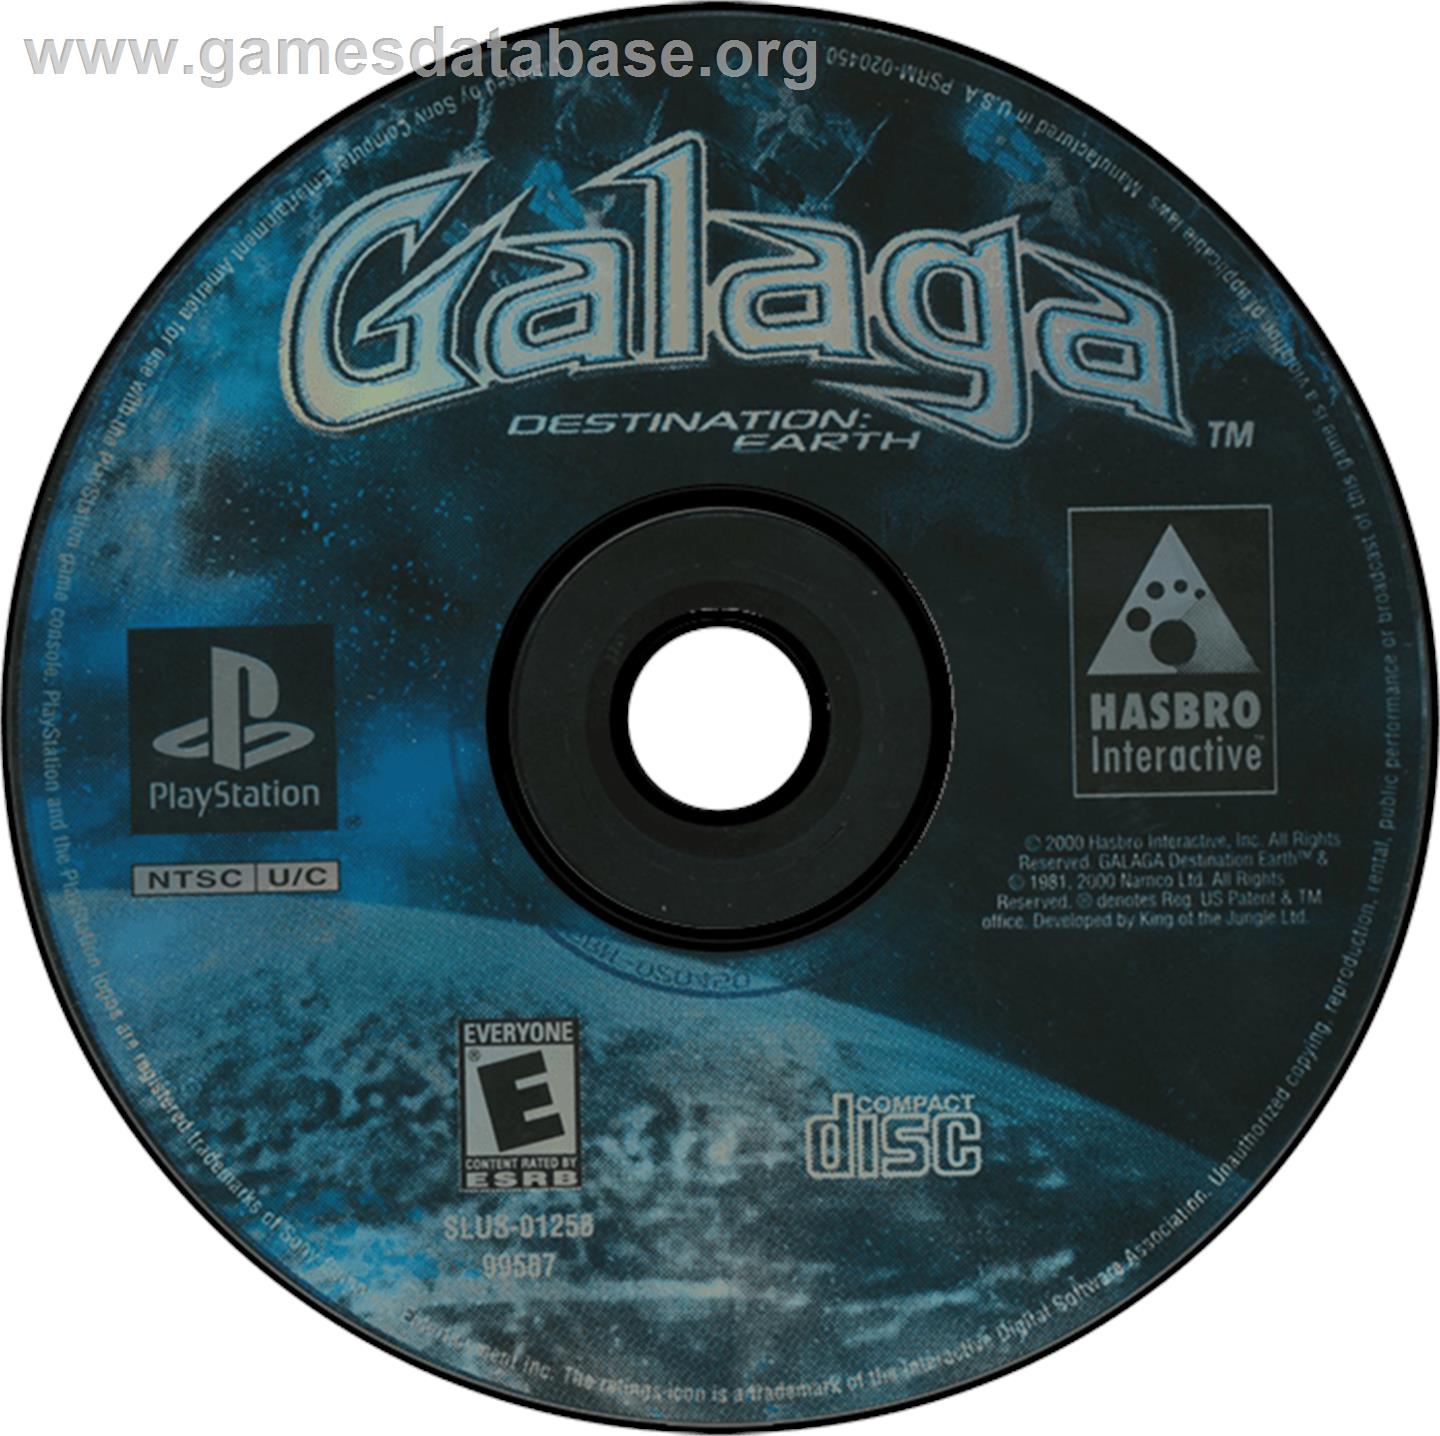 Galaga: Destination Earth - Sony Playstation - Artwork - Disc